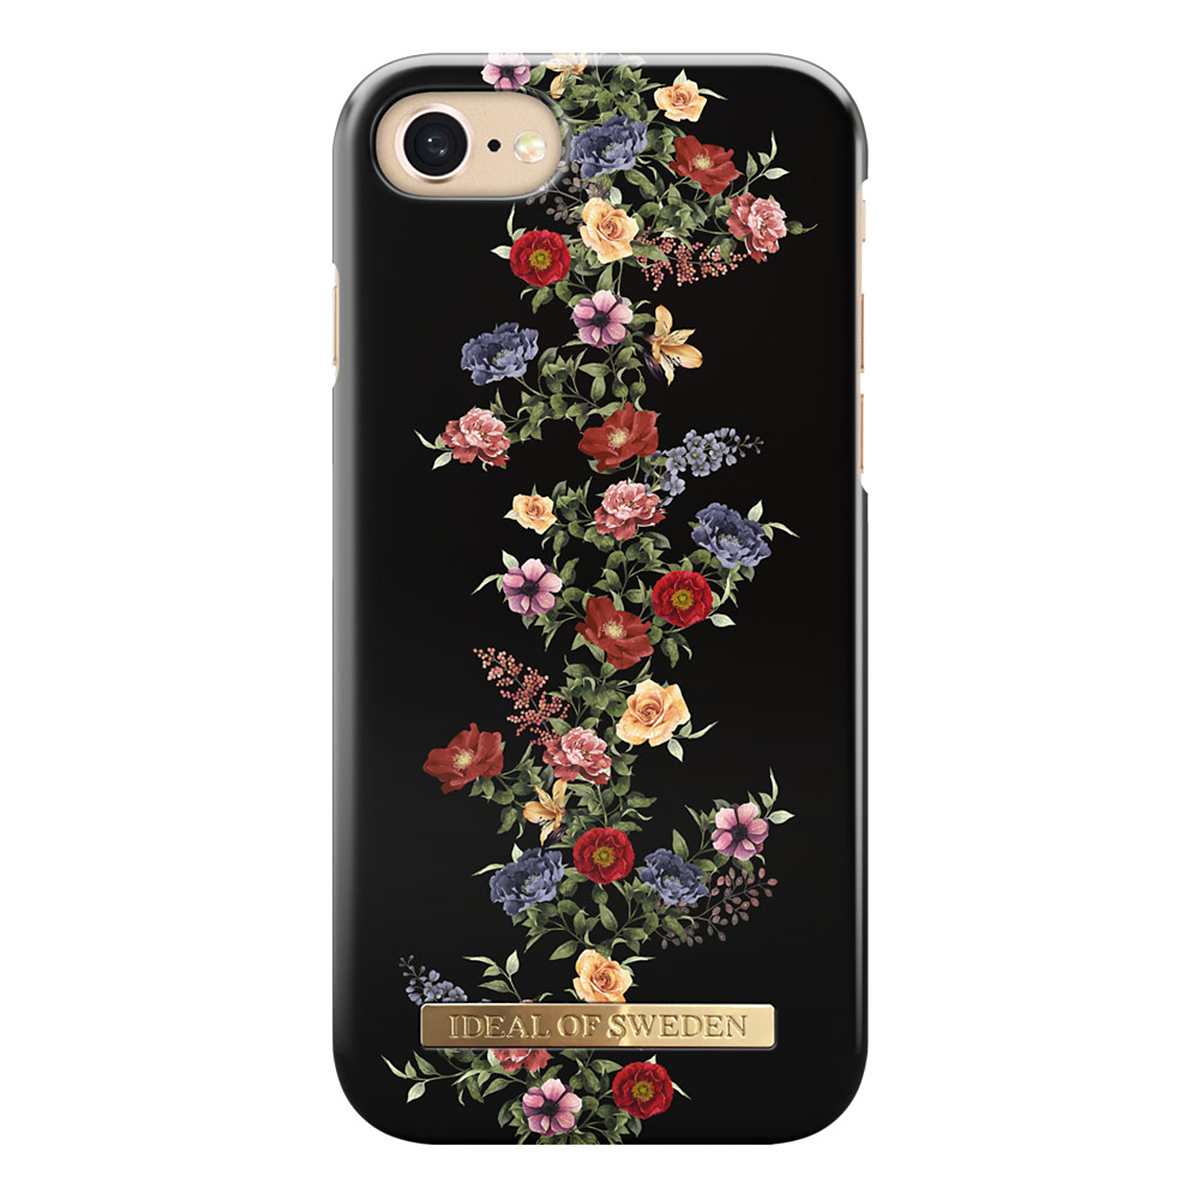 iDeal Fashion Case magnetskal iPhone 8/7/6, Dark Floral